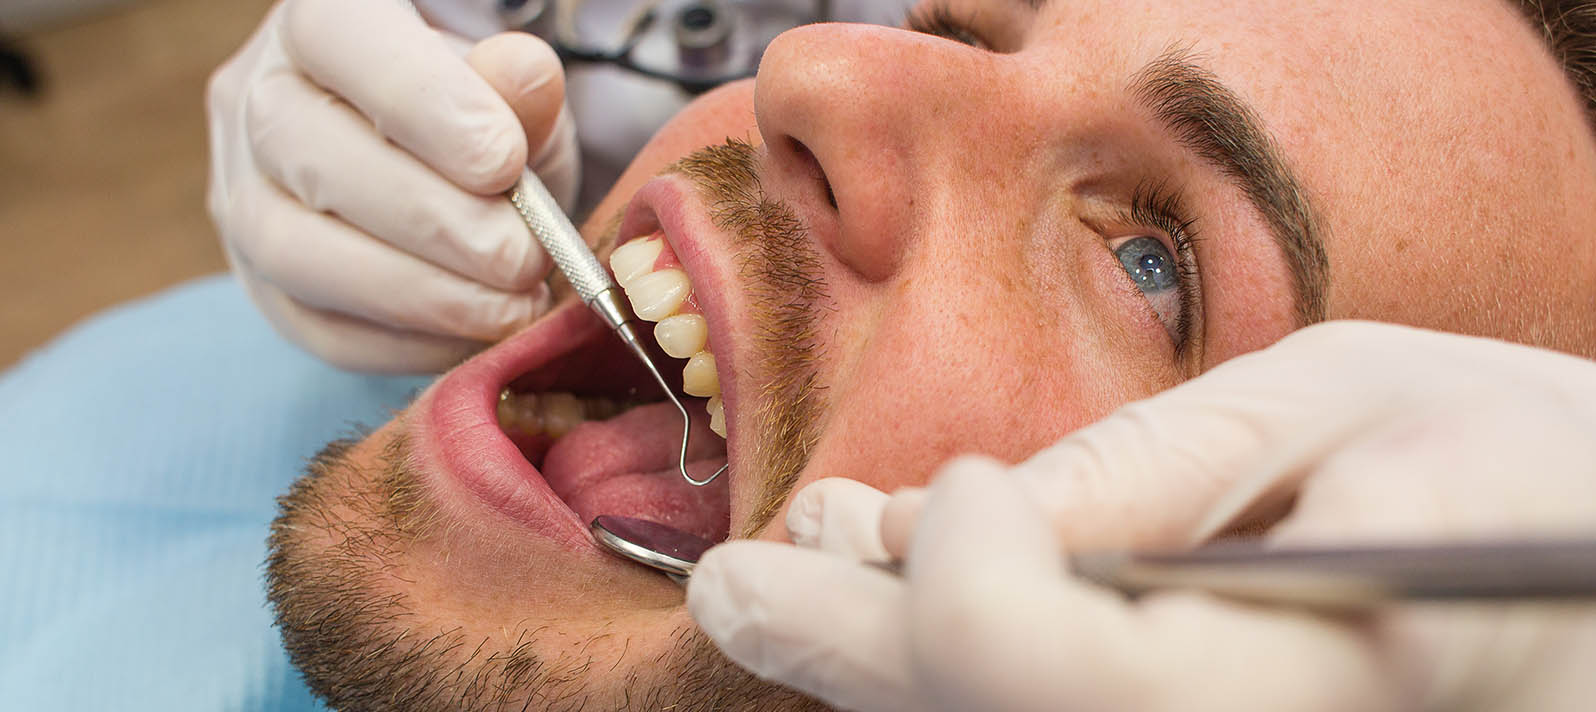 Imagen de revisión dental para ver las causas del dolor de las encías